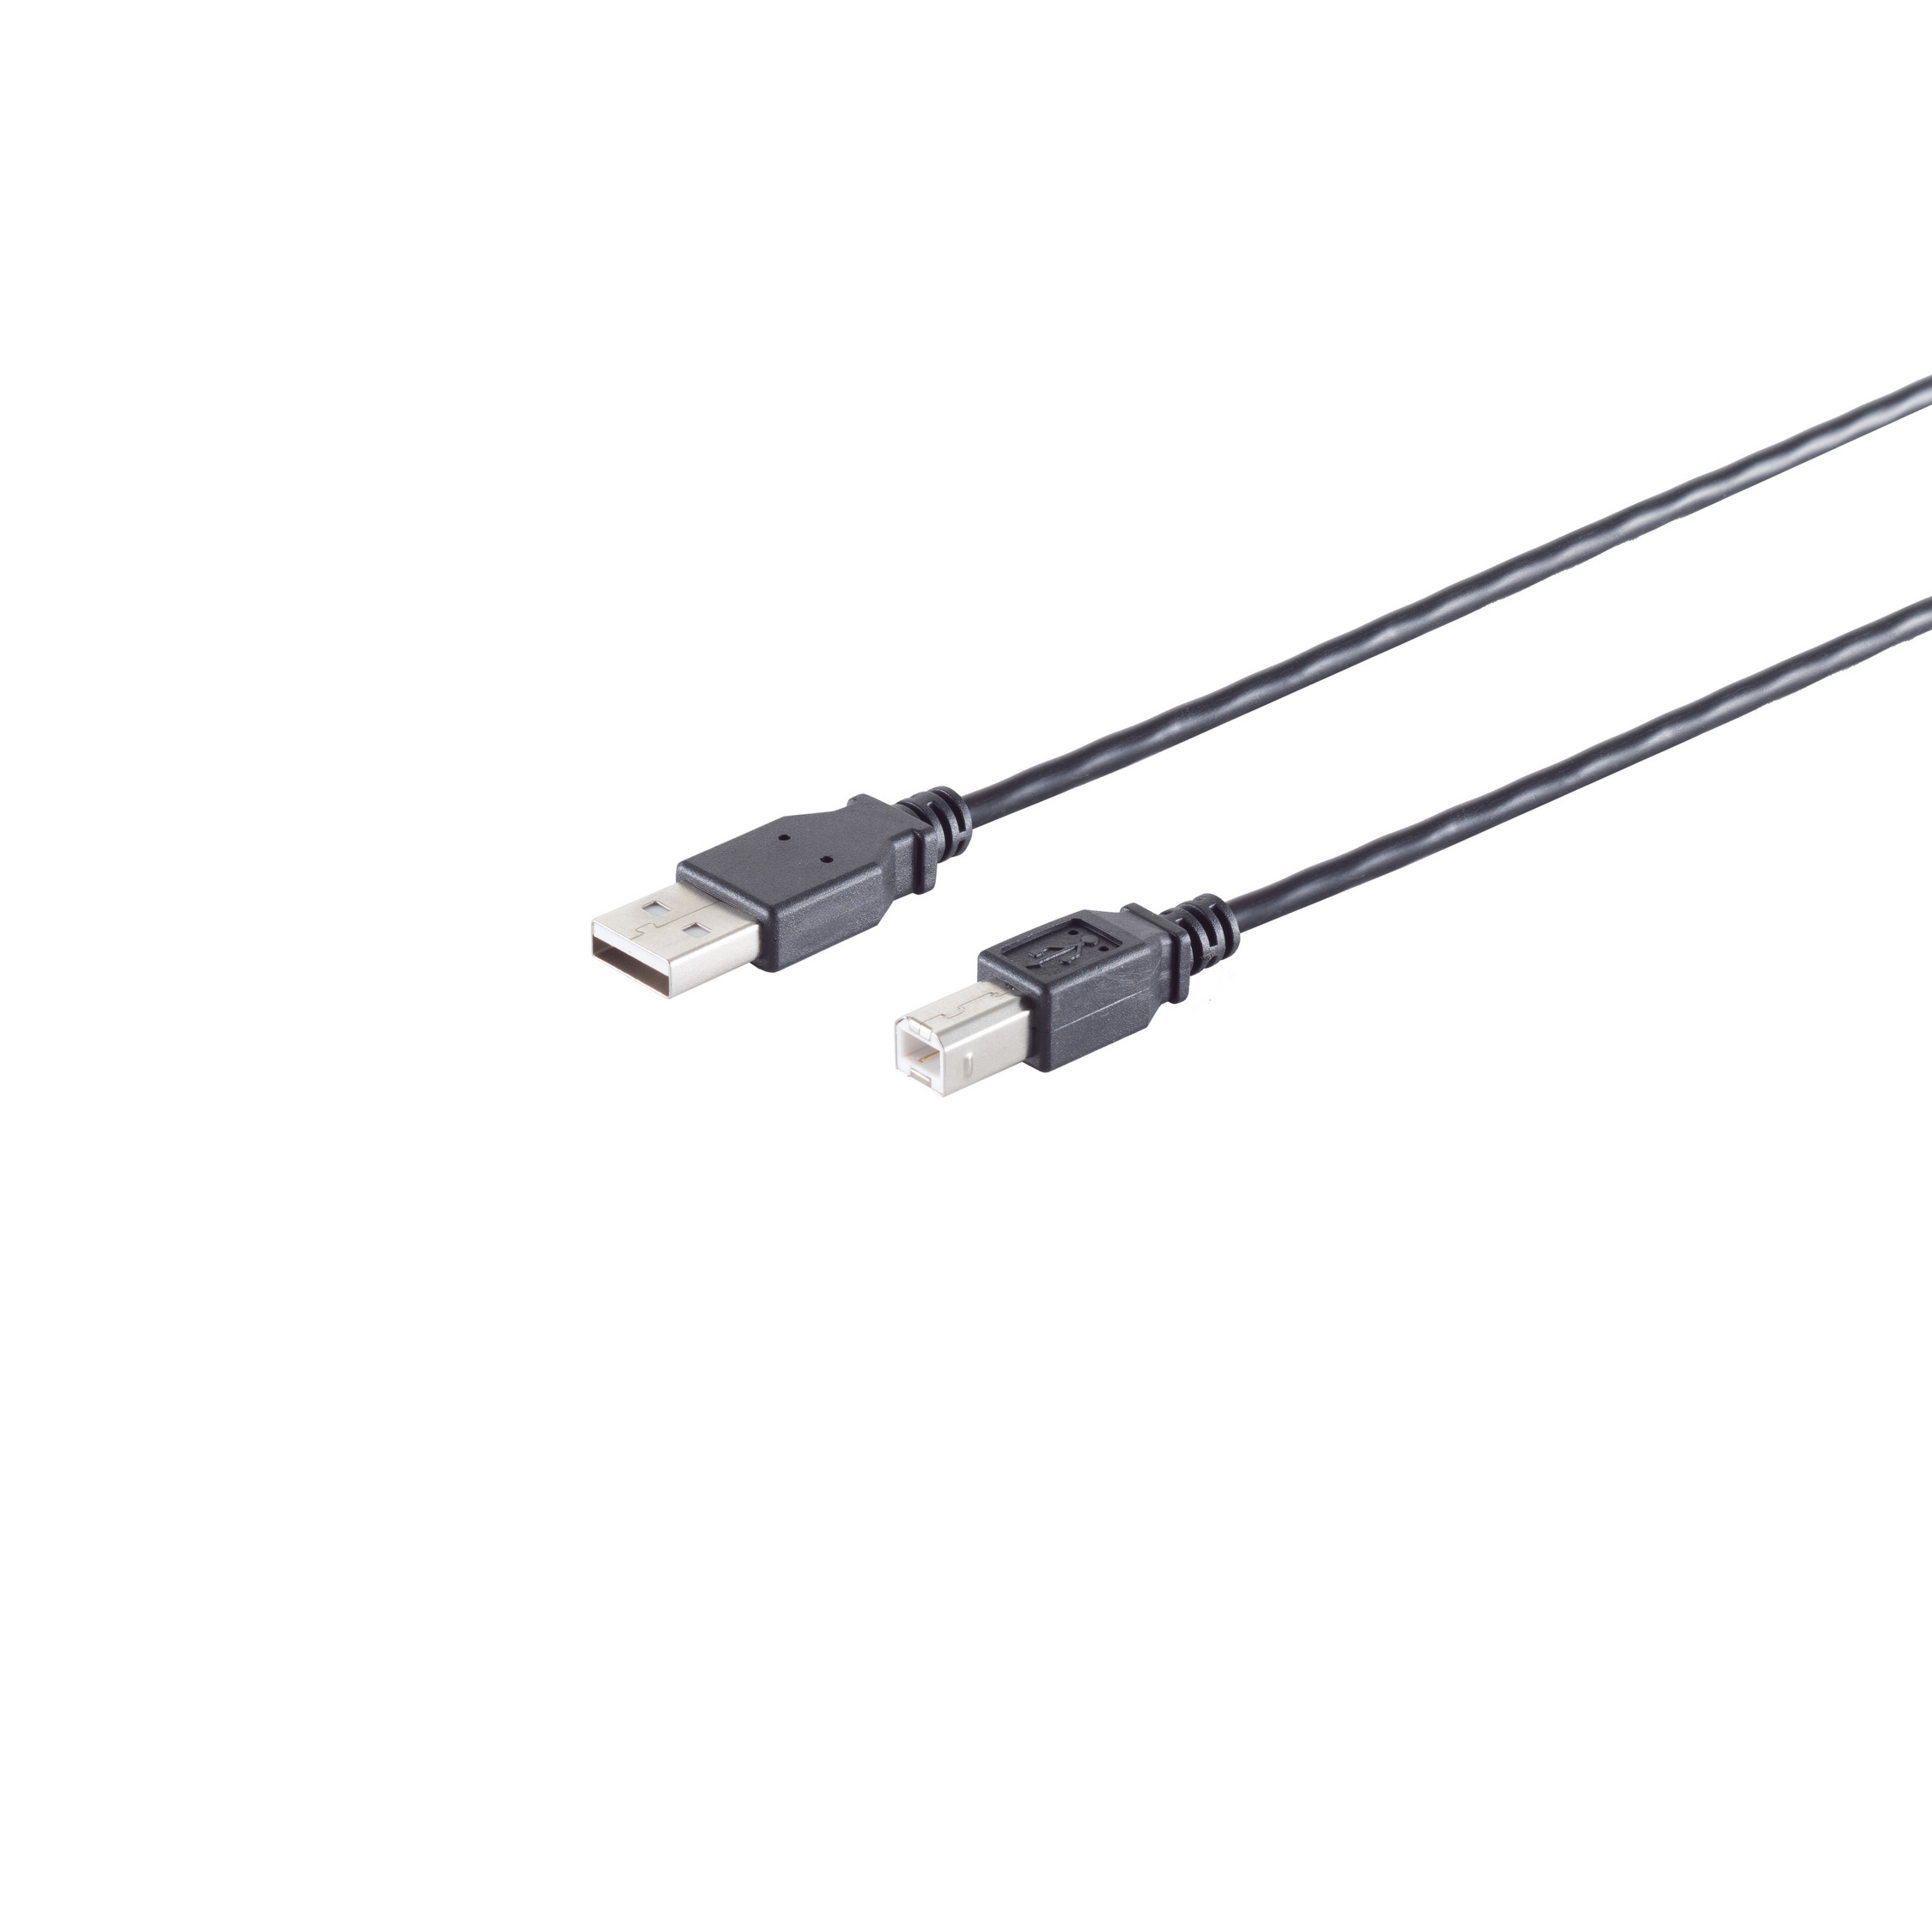 USB Adapterkabel, S/CONN schwarz, Kabel 0,25m USB-B, USB-A 2.0, CONNECTIVITY MAXIMUM